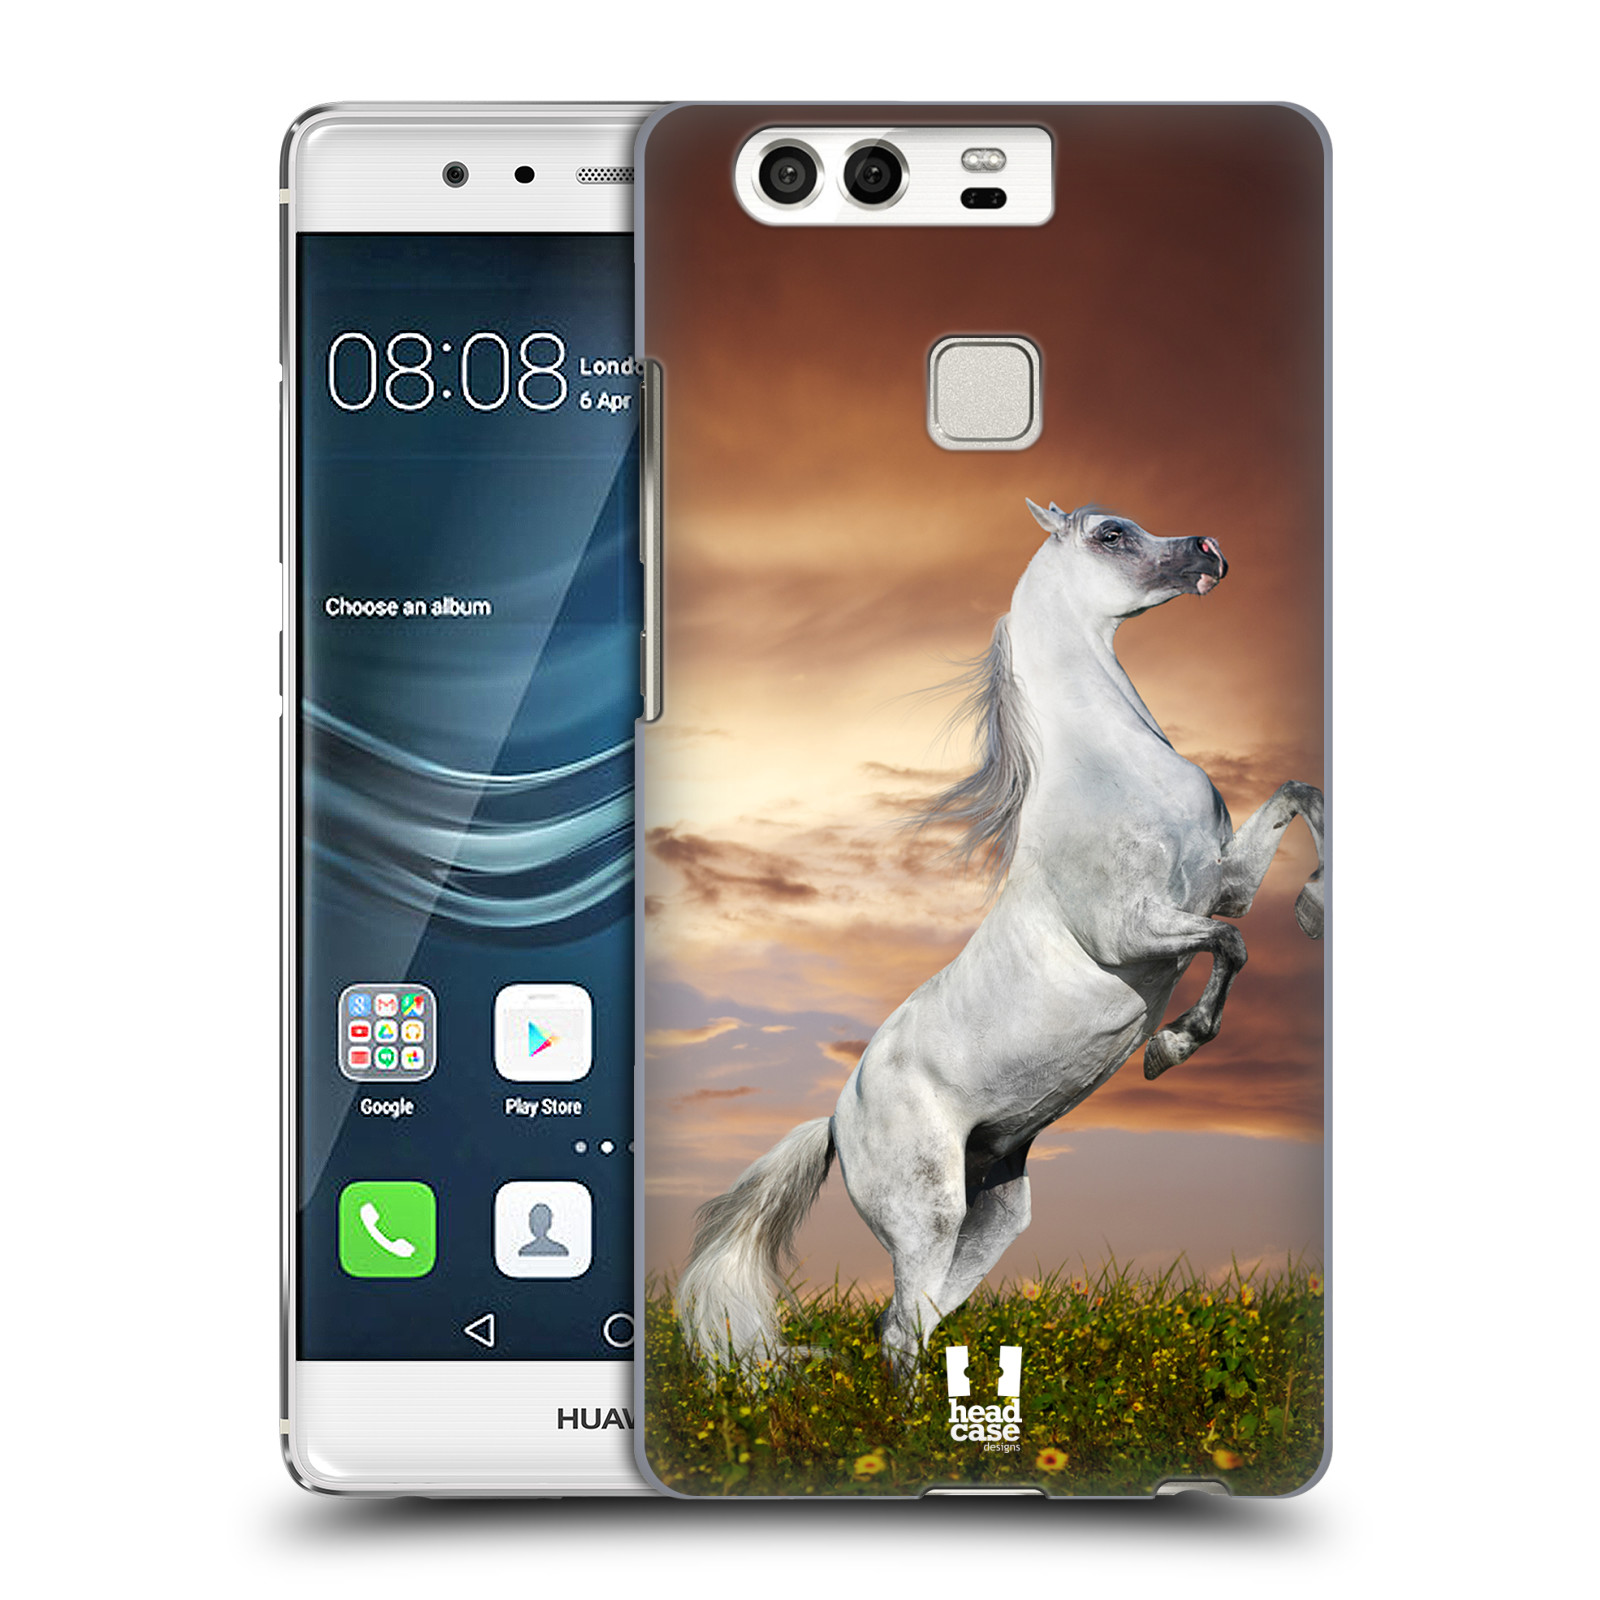 HEAD CASE plastový obal na mobil Huawei P9 / P9 DUAL SIM vzor Divočina, Divoký život a zvířata foto DIVOKÝ KŮŇ MUSTANG BÍLÁ